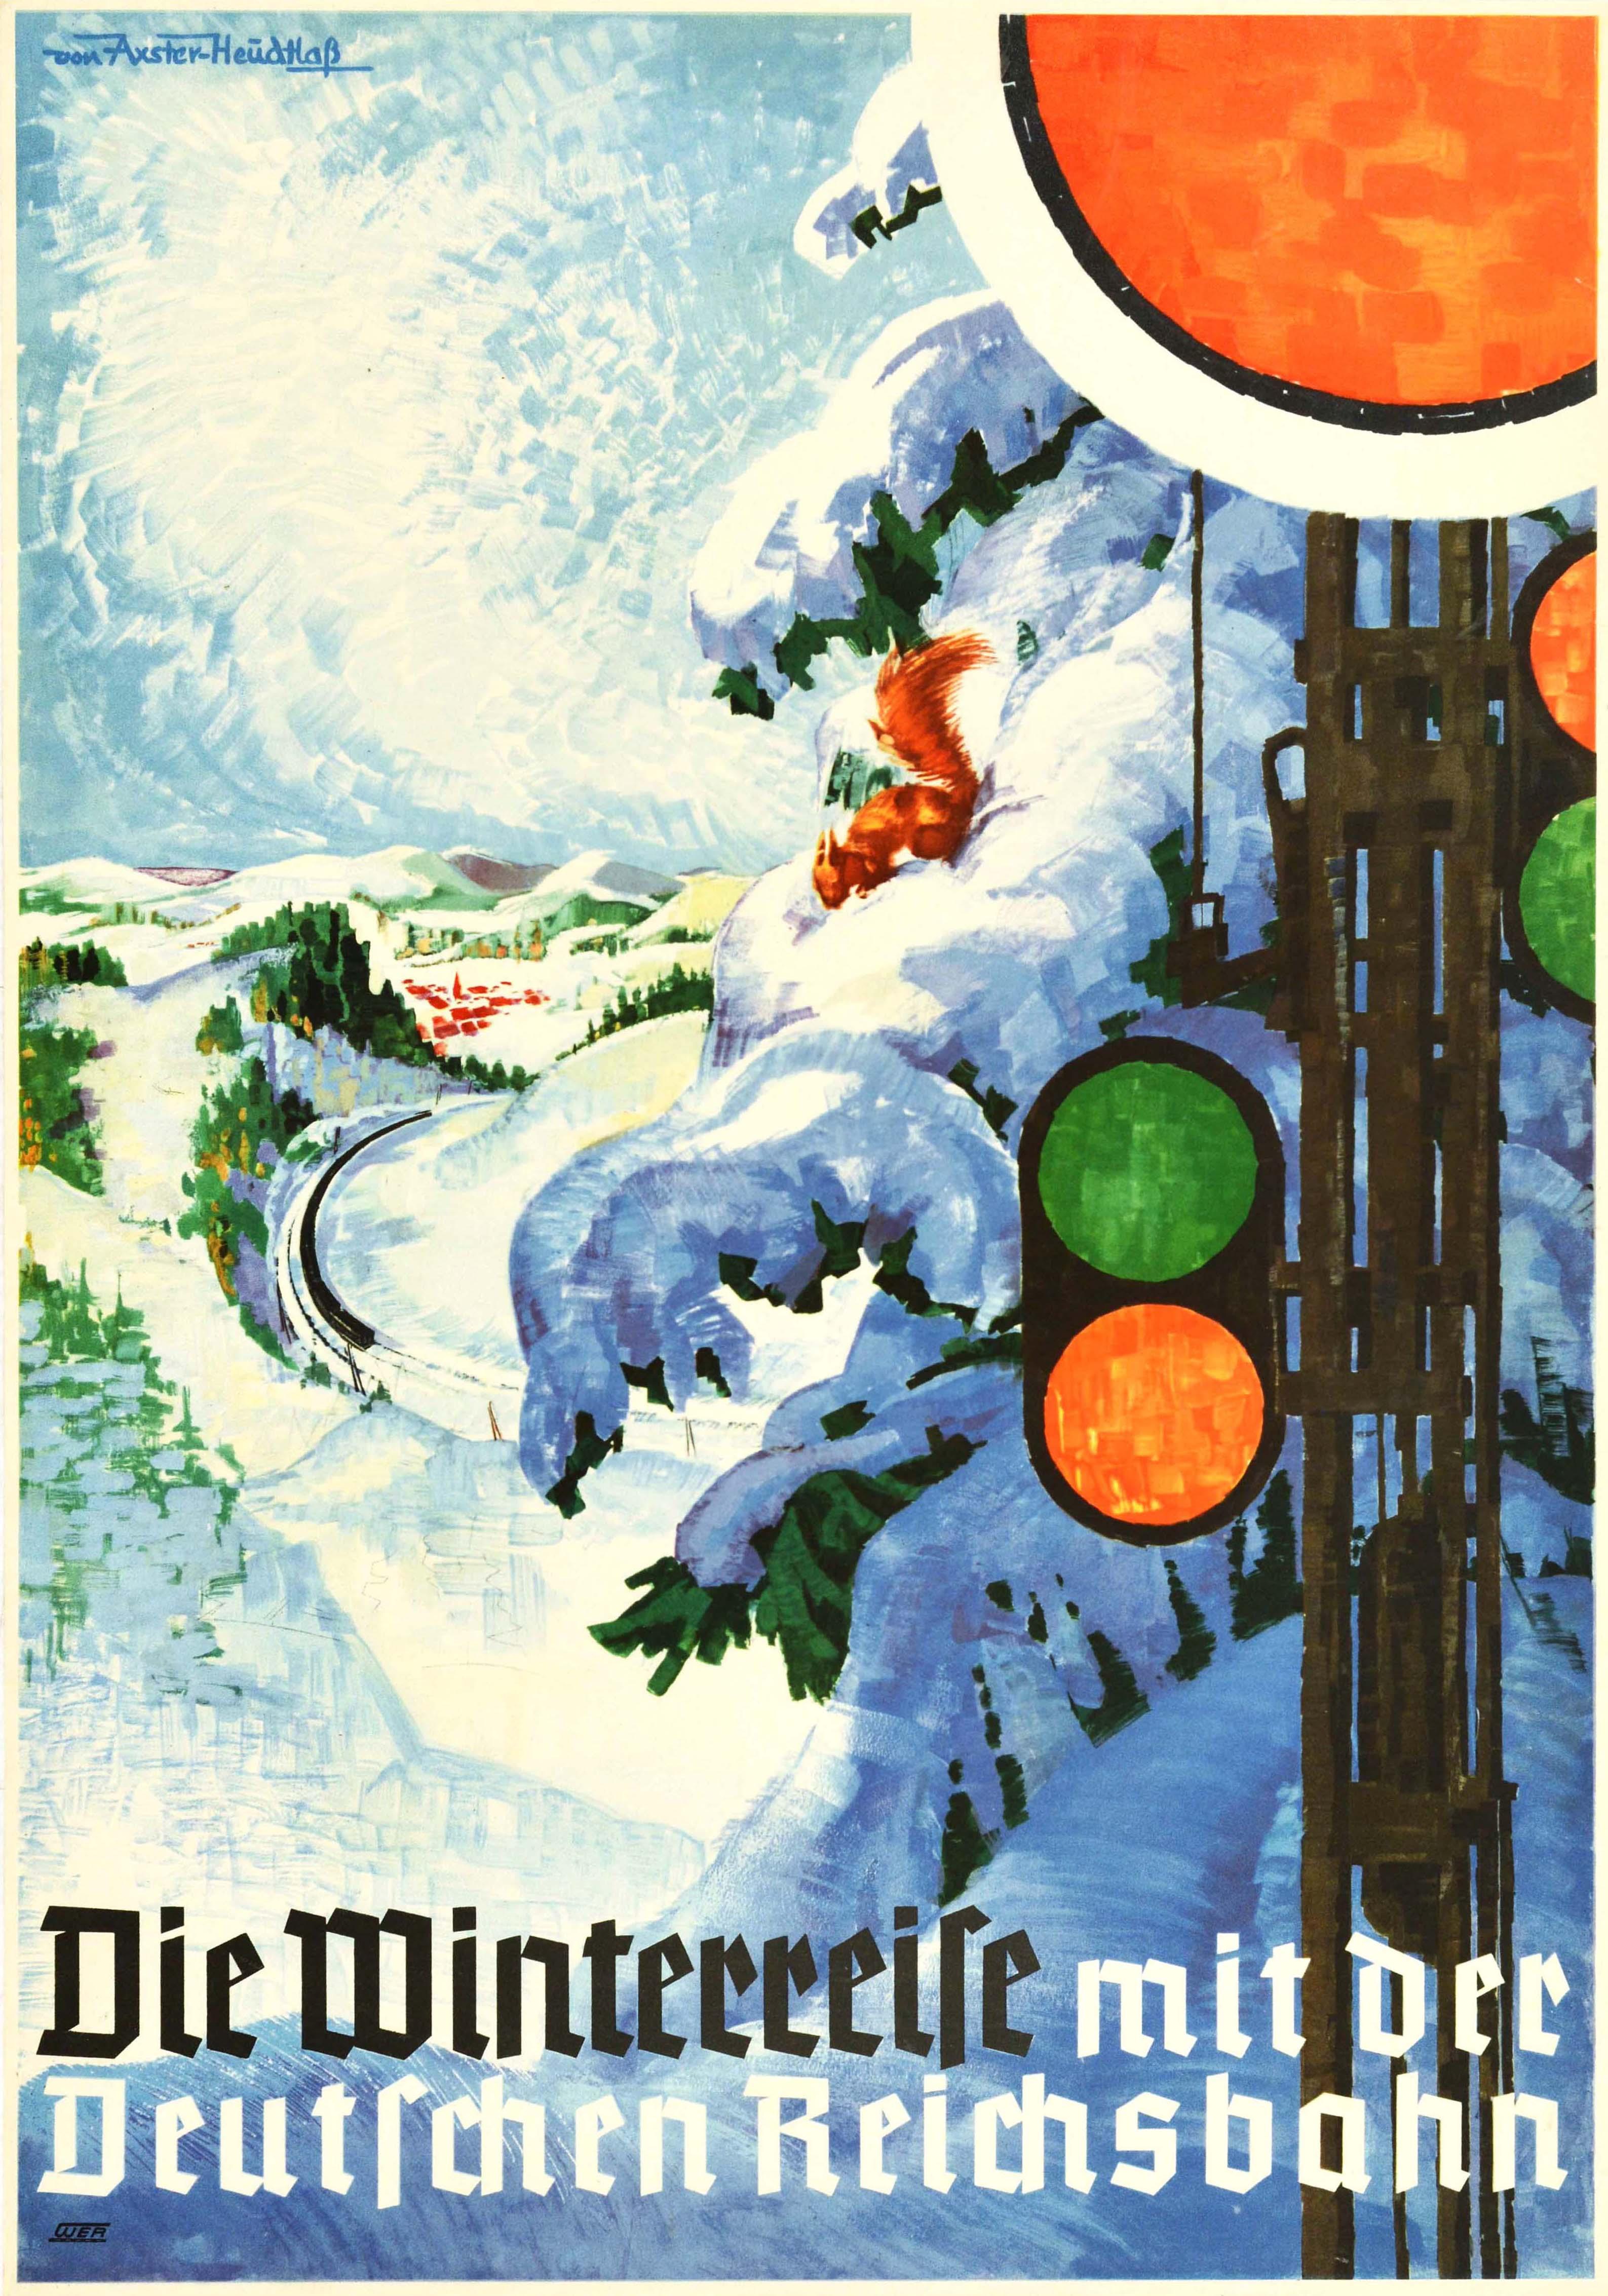 Werner Von Axster-Heudtlass Print - Original Vintage Poster Deutsche Reichsbahn German Railway Winter Train Travel